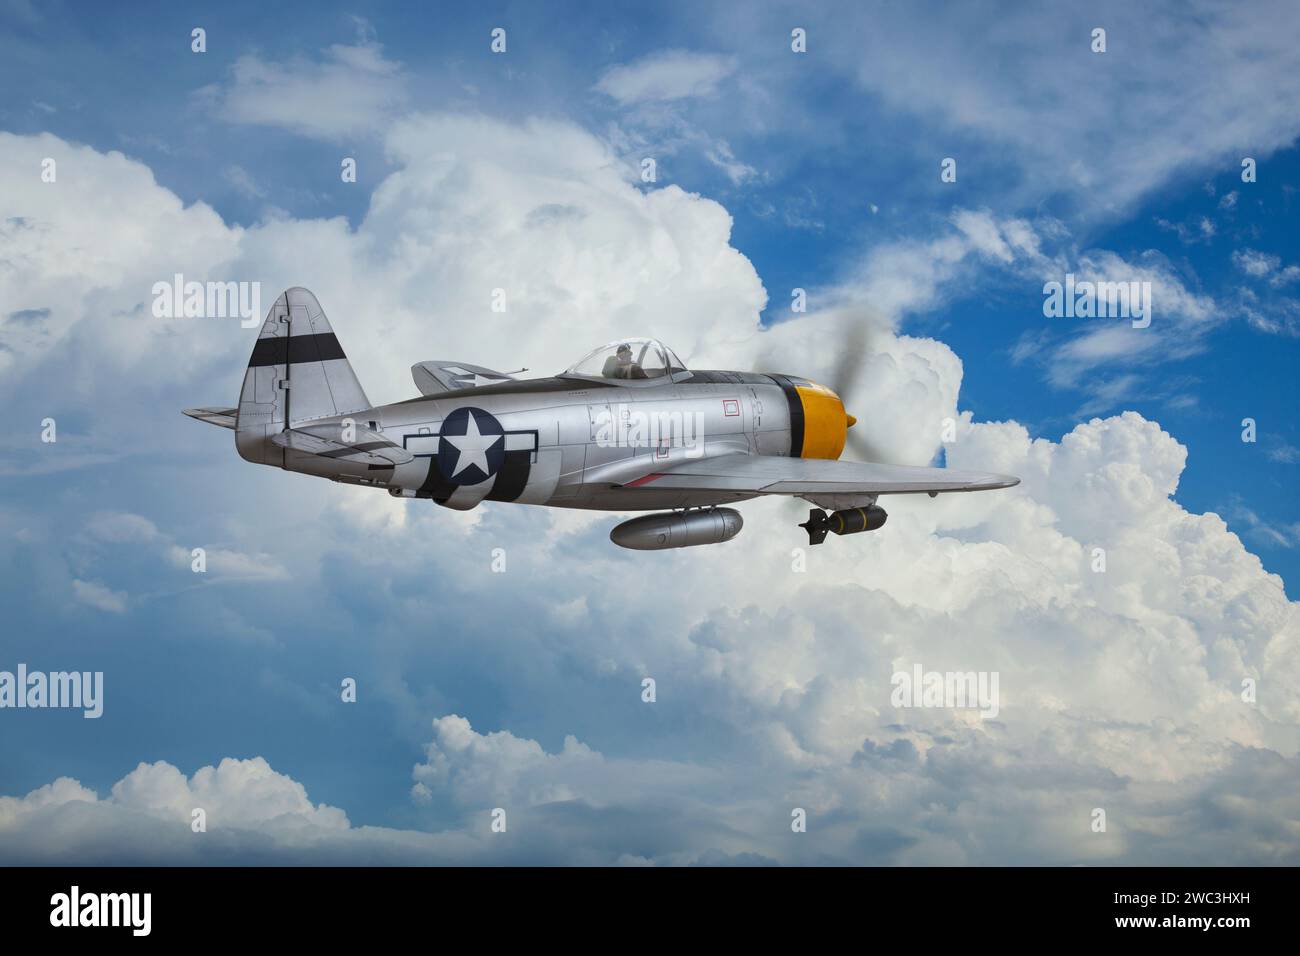 Le chasseur Thunderbolt P-47 (modèle) patrouille le ciel au-dessus des nuages Banque D'Images